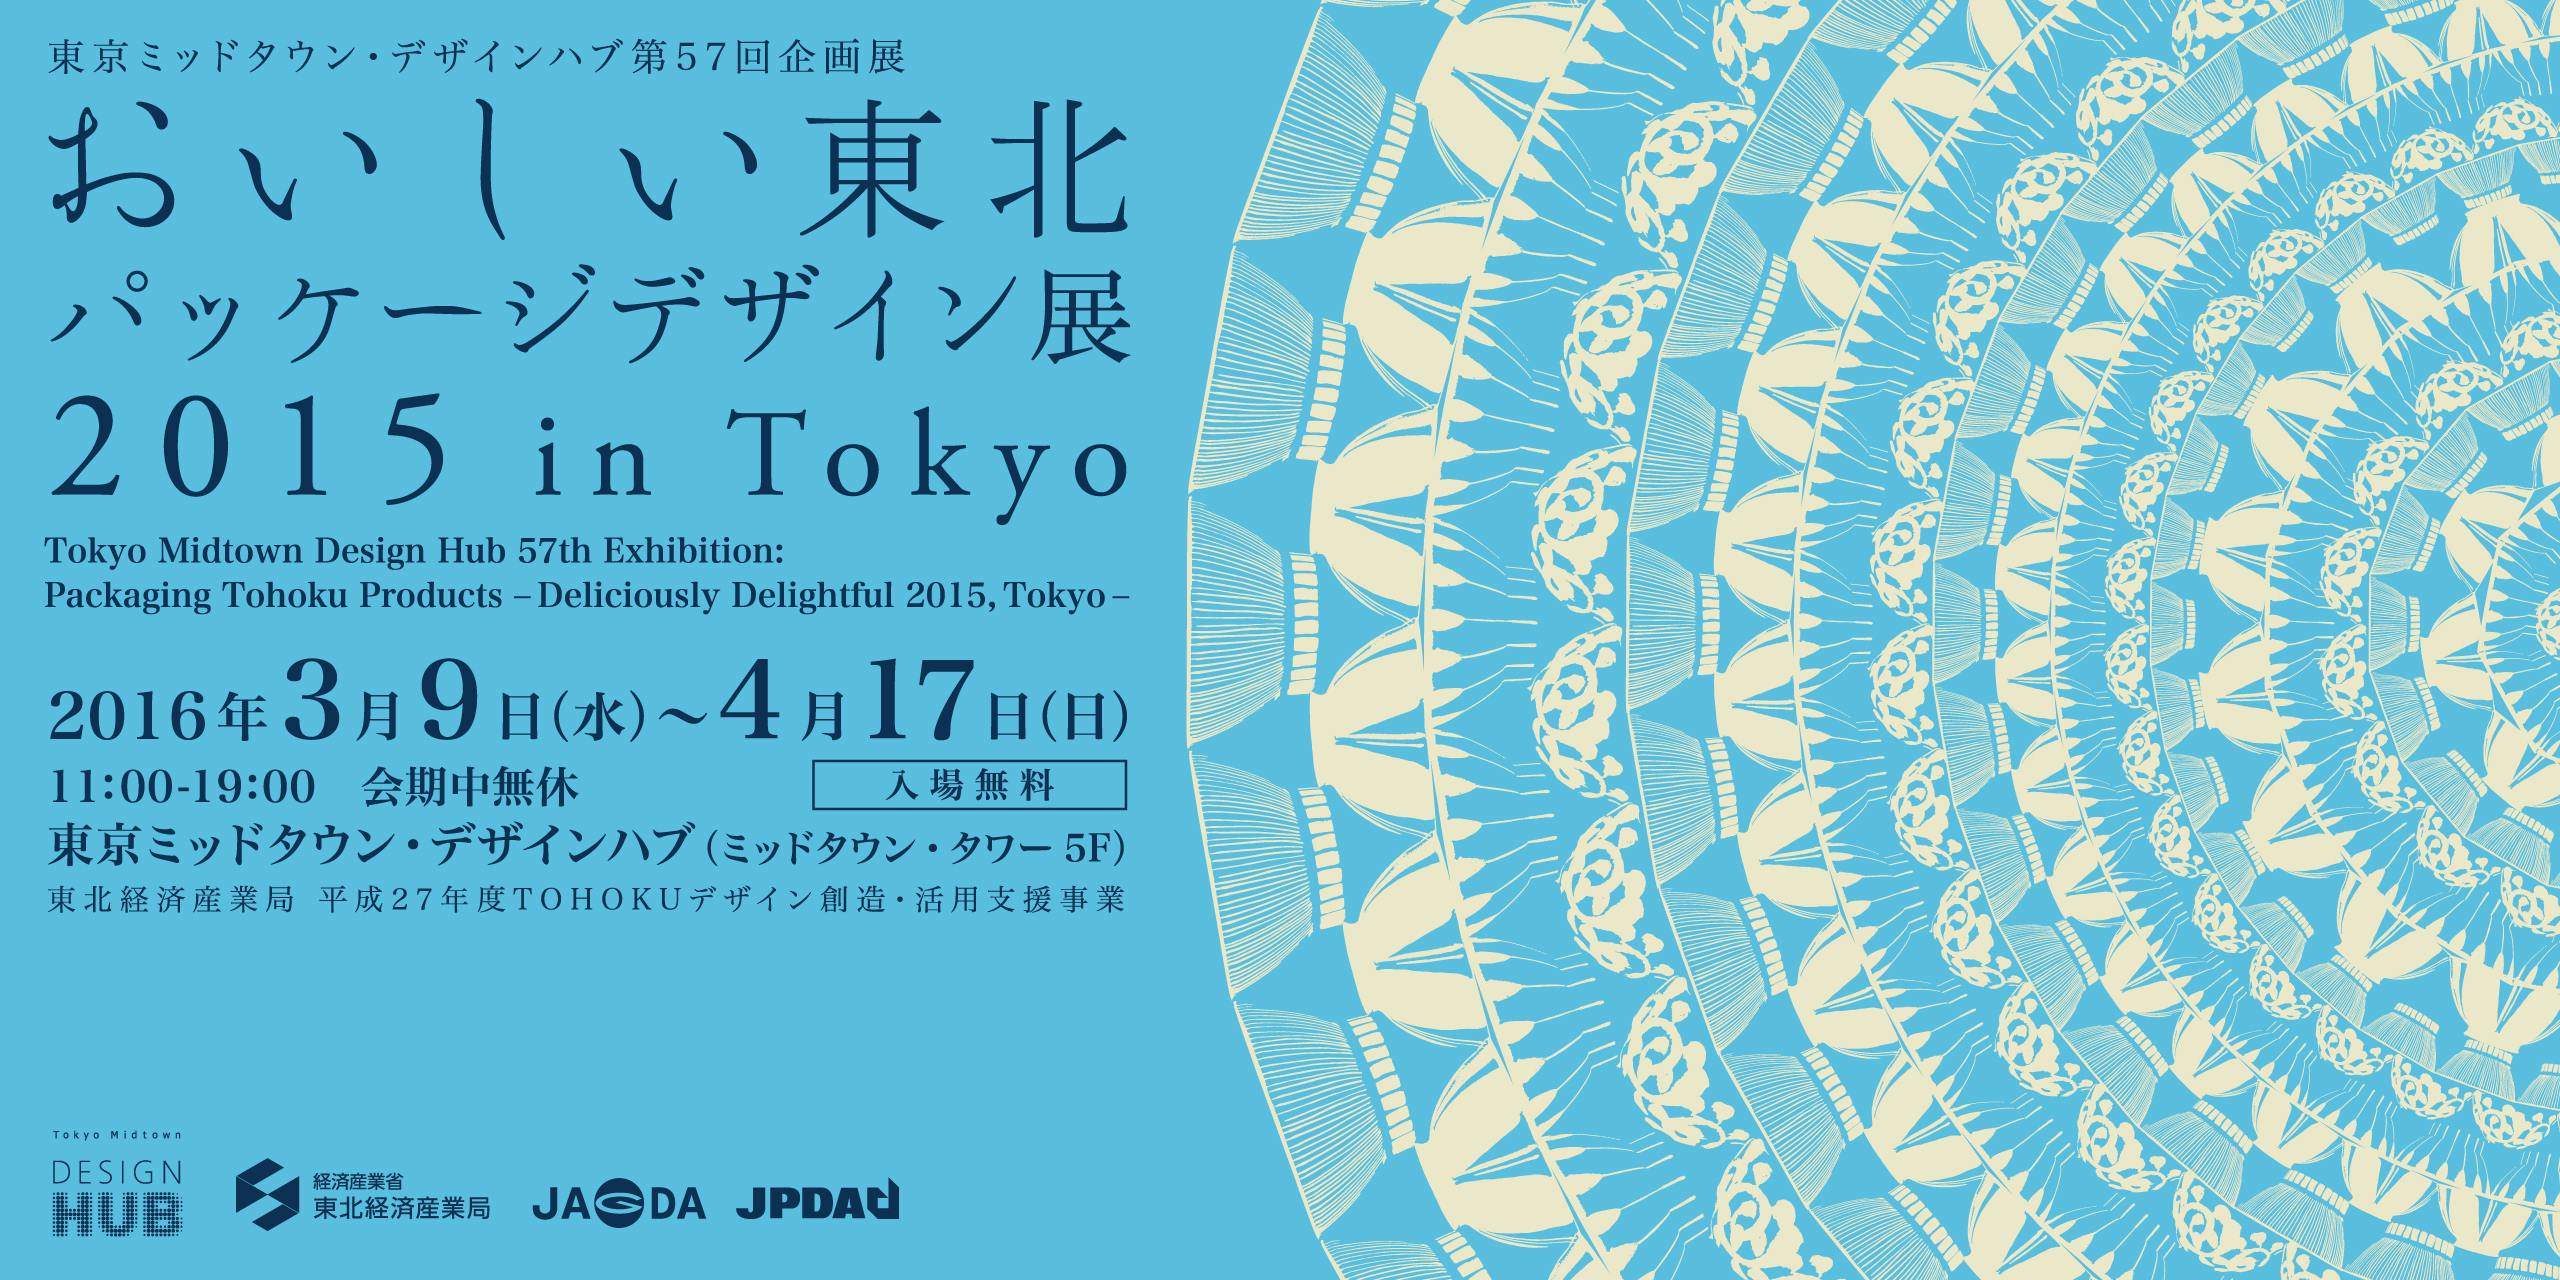 おいしい東北パッケージデザイン展2015 in Tokyo